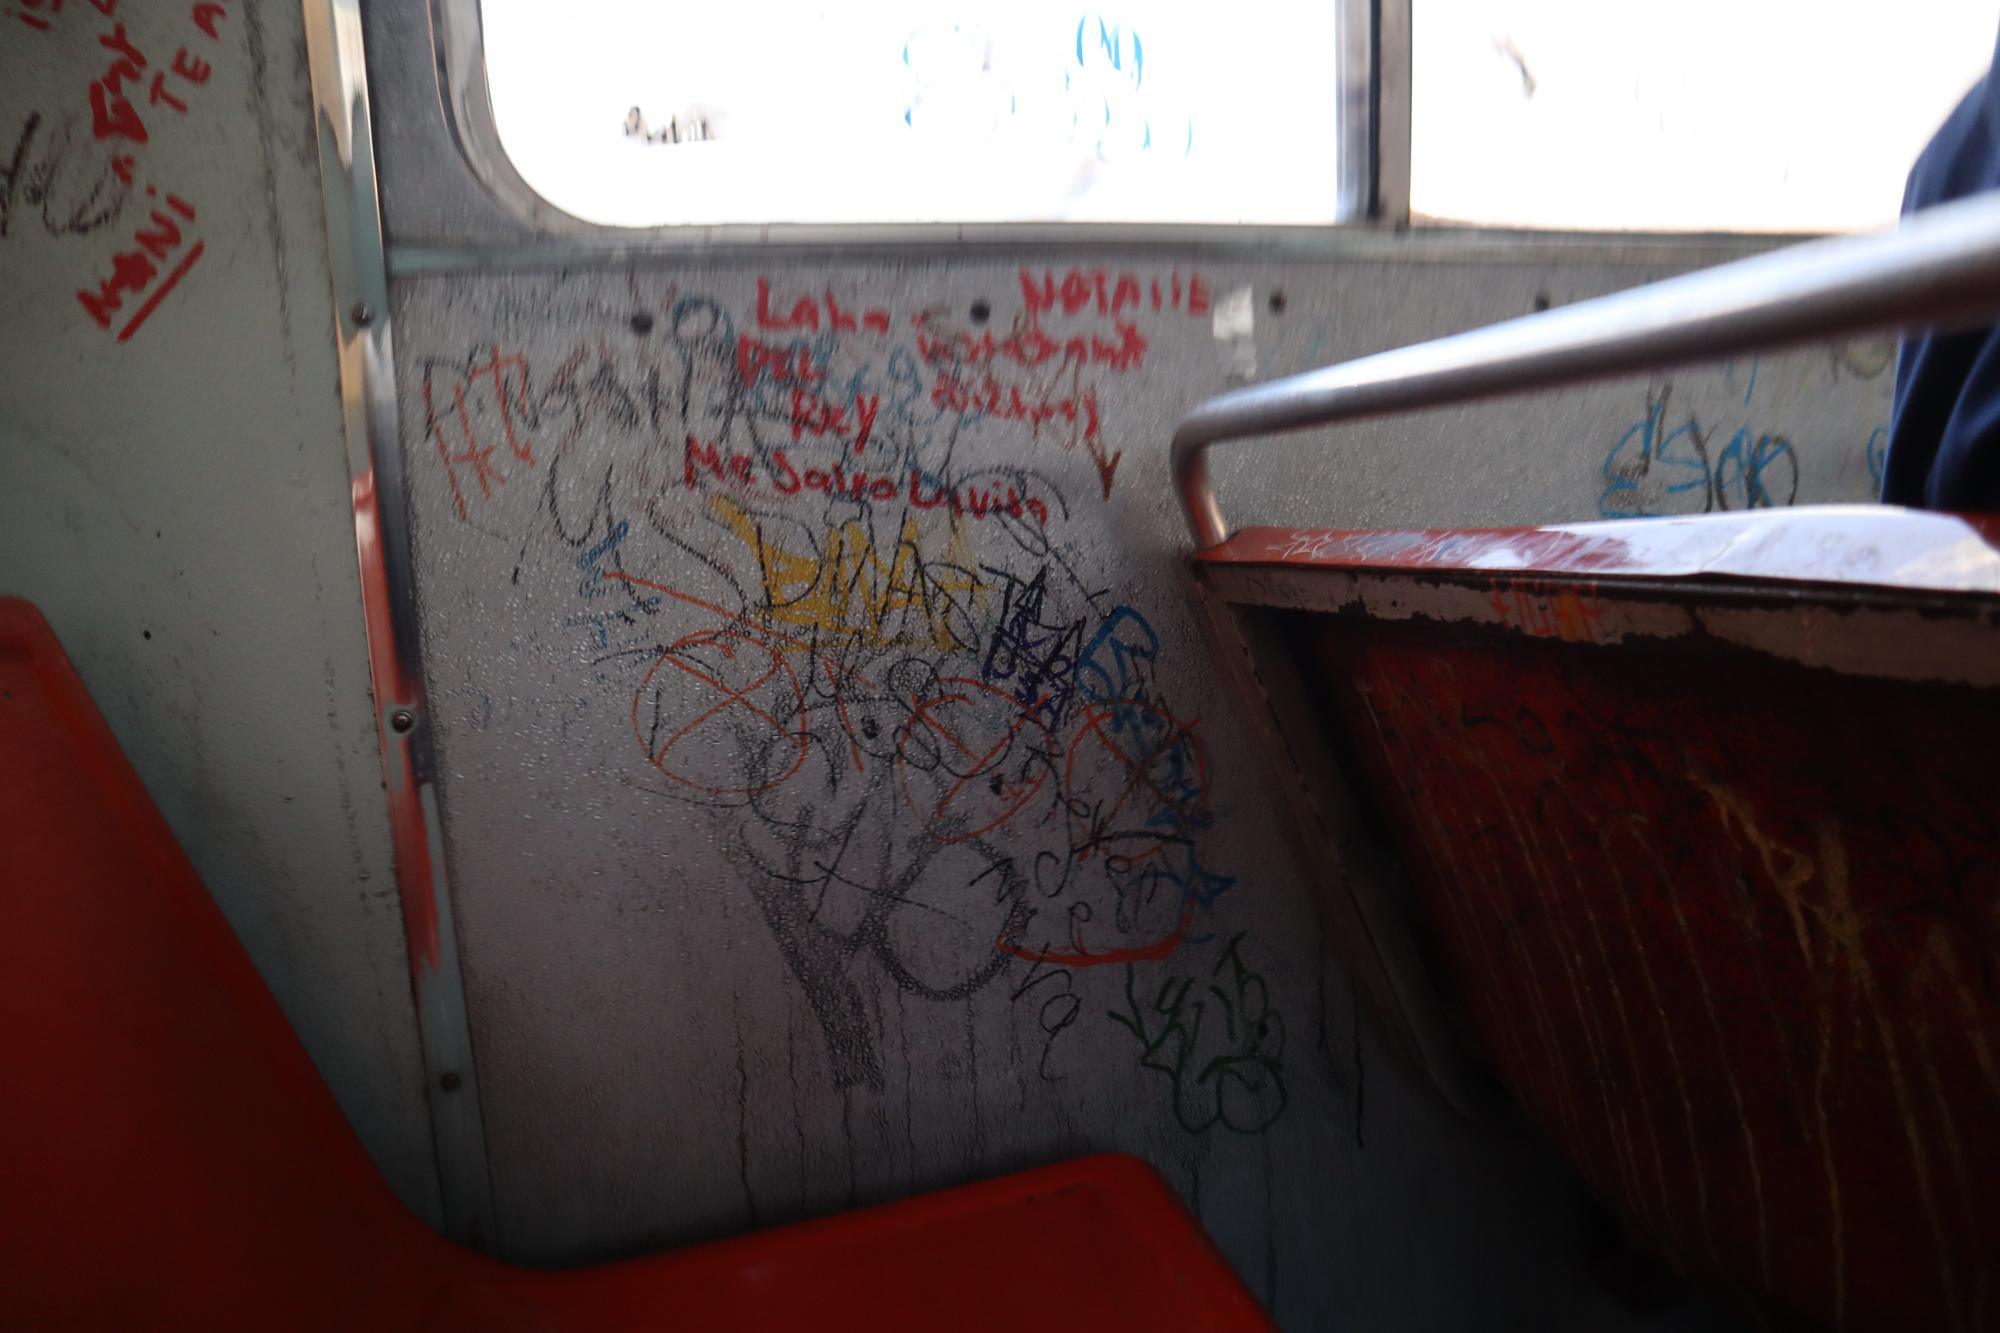 $!Algunas de las quejas sobre el transporte público se enfocan en las malas condiciones de las unidades. Desde asientos rotos o que no están bien sujetos, hasta grafitis y basura.